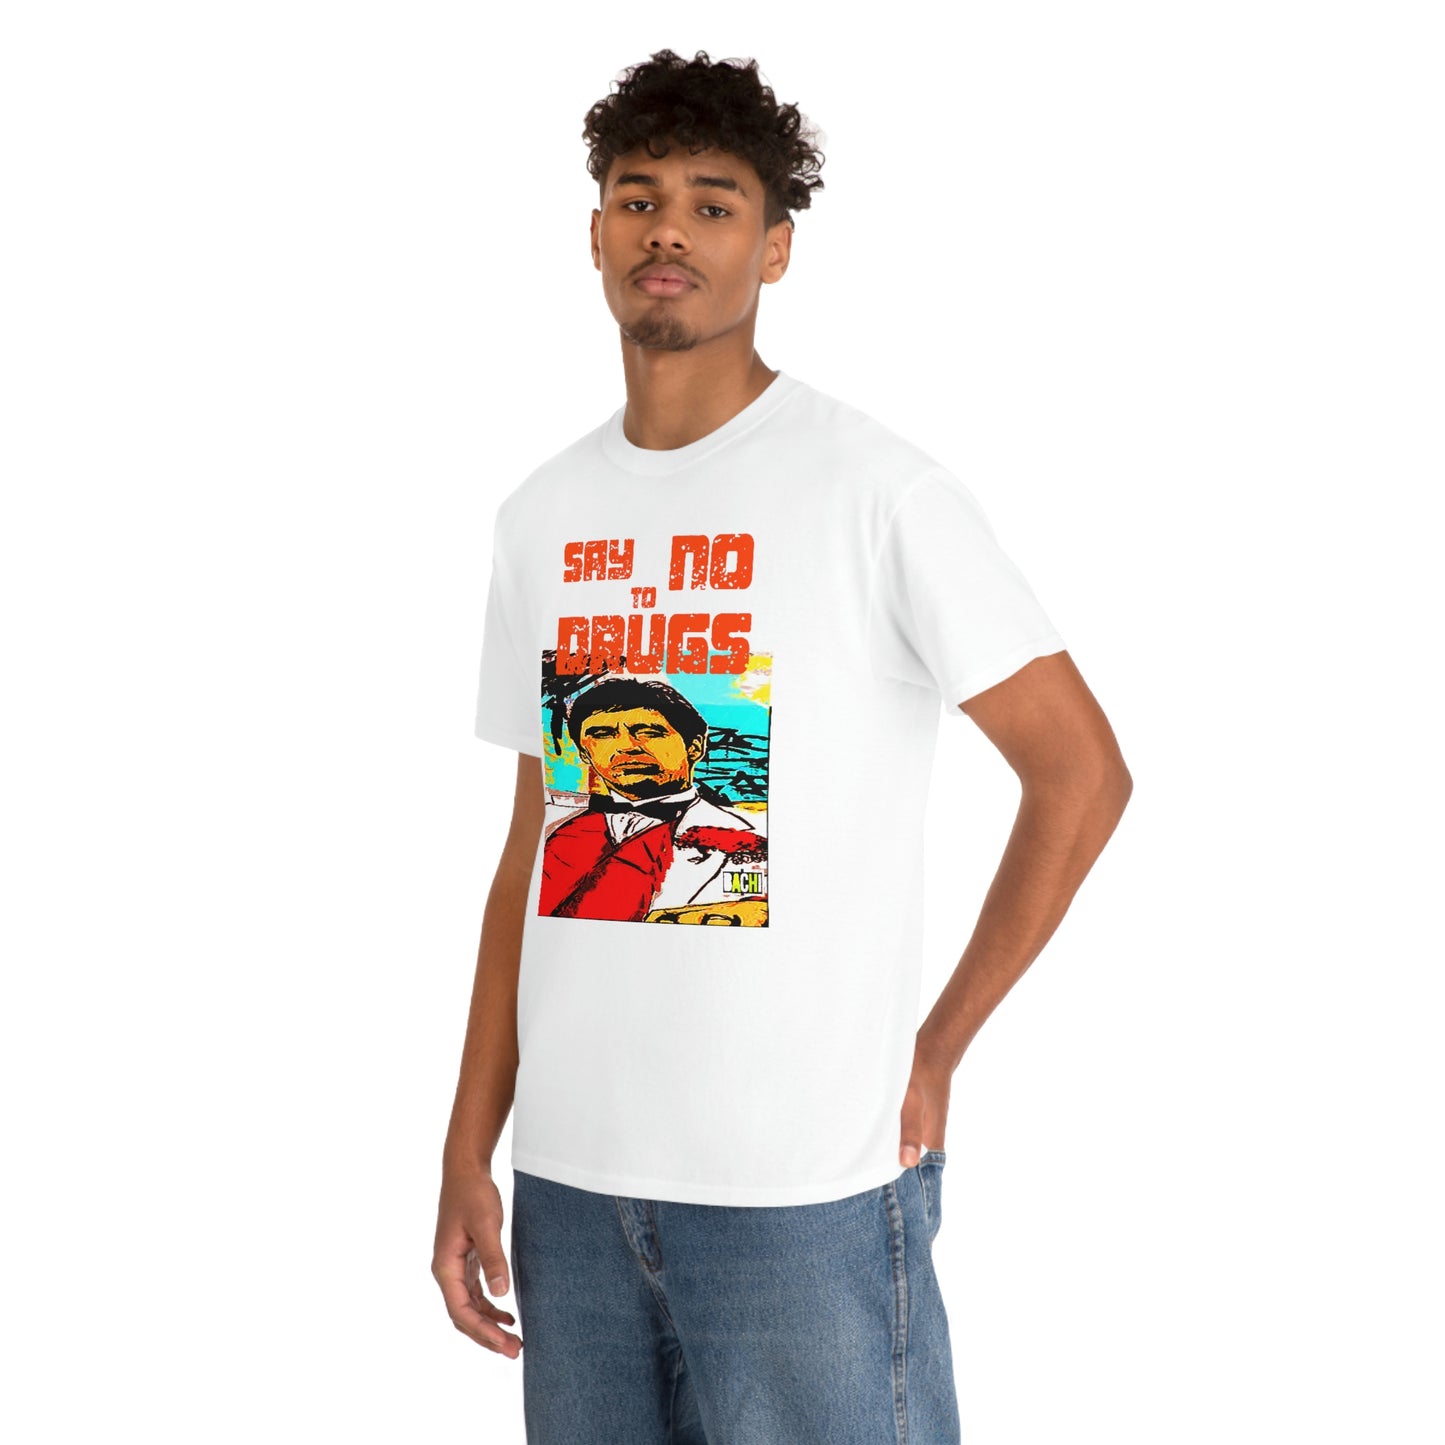 Unisex T-shirt Scarface Tony Montana Say No To Drugs